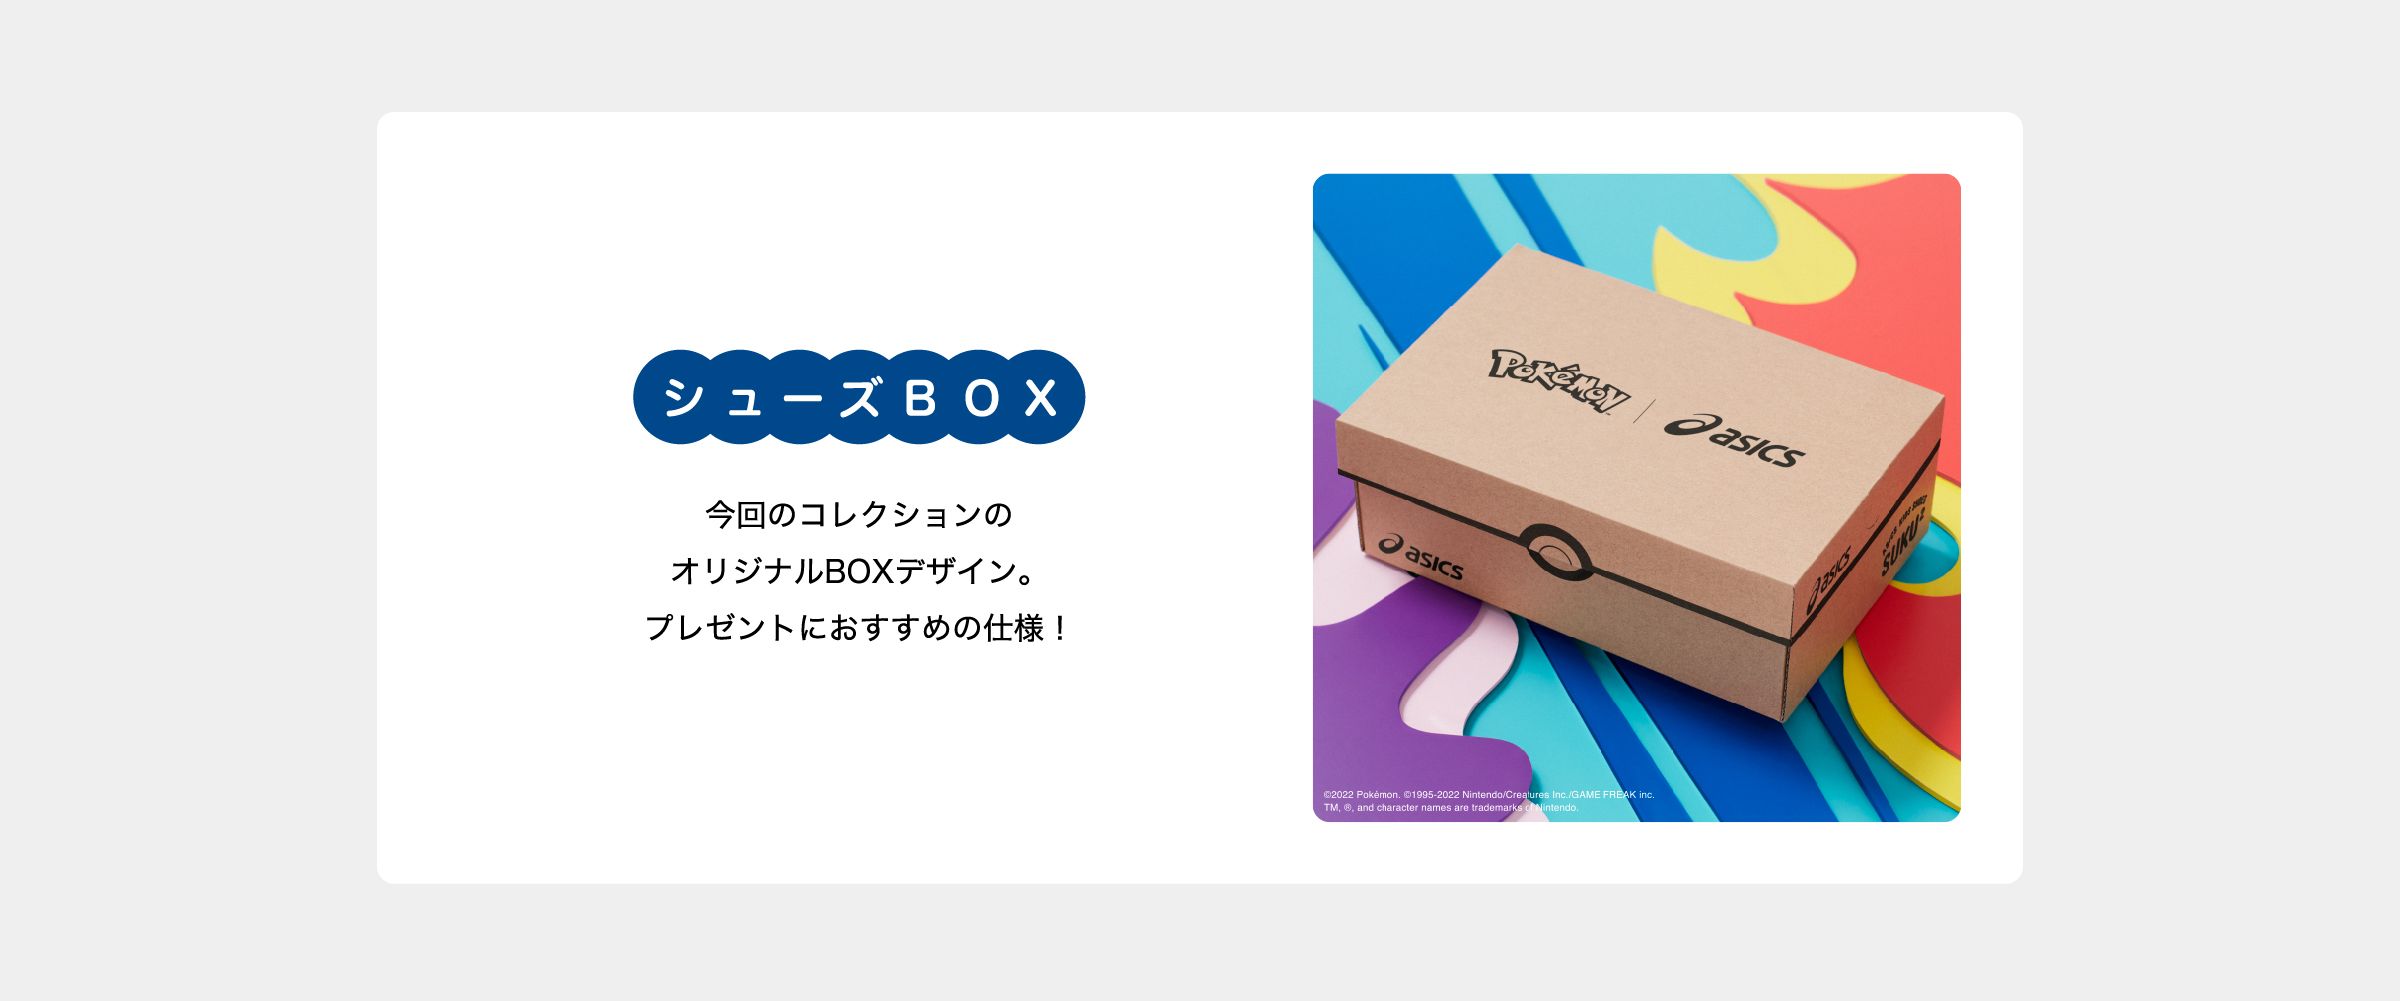 シューズBOX 今回のコレクションのオリジナルBOXデザイン。プレゼントにおすすめの仕様！